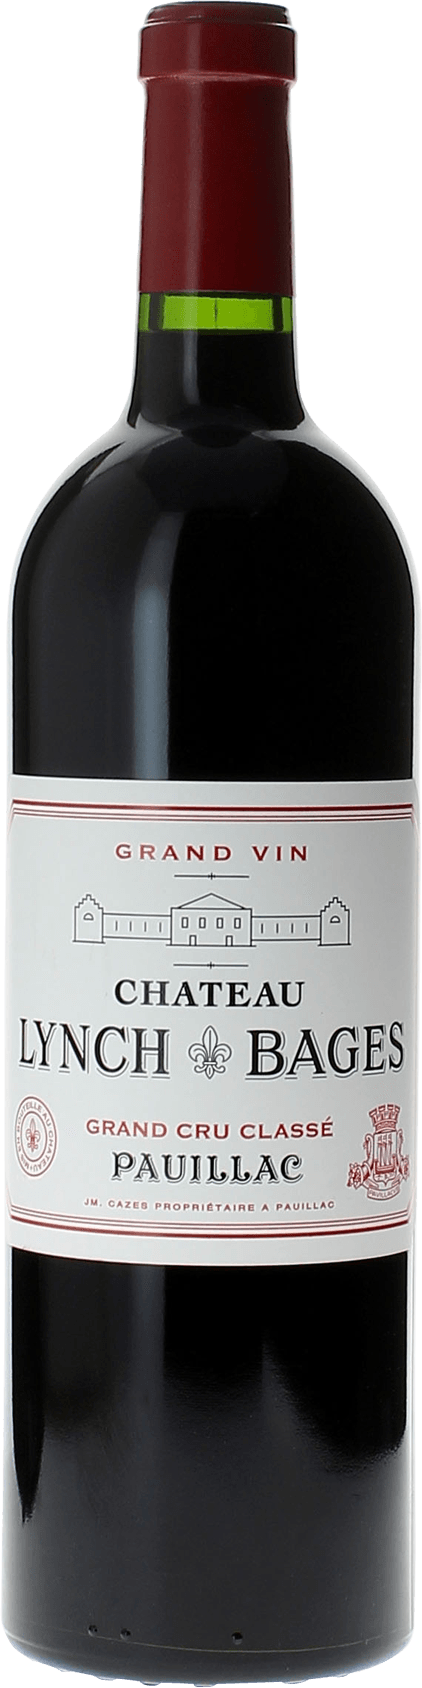 Lynch bages 1973 5 me Grand cru class Pauillac, Bordeaux rouge